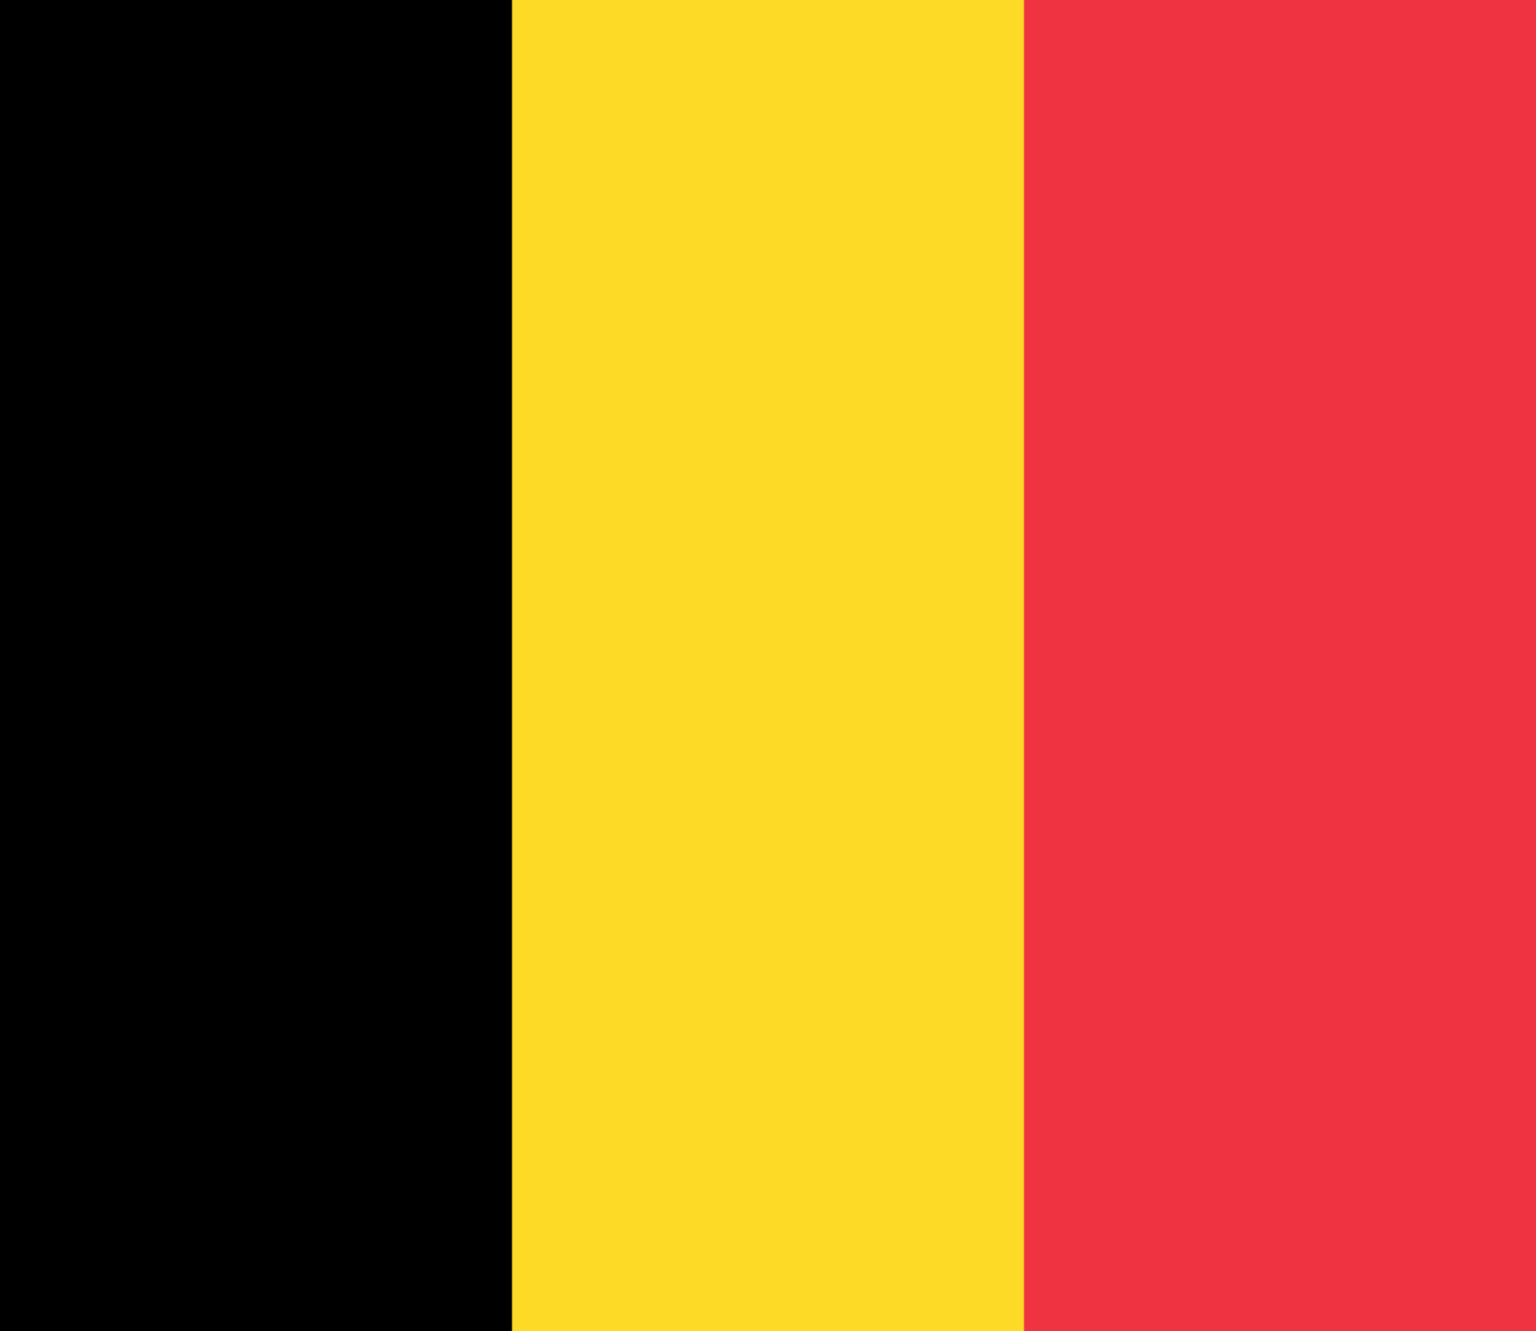 the Belgium flag